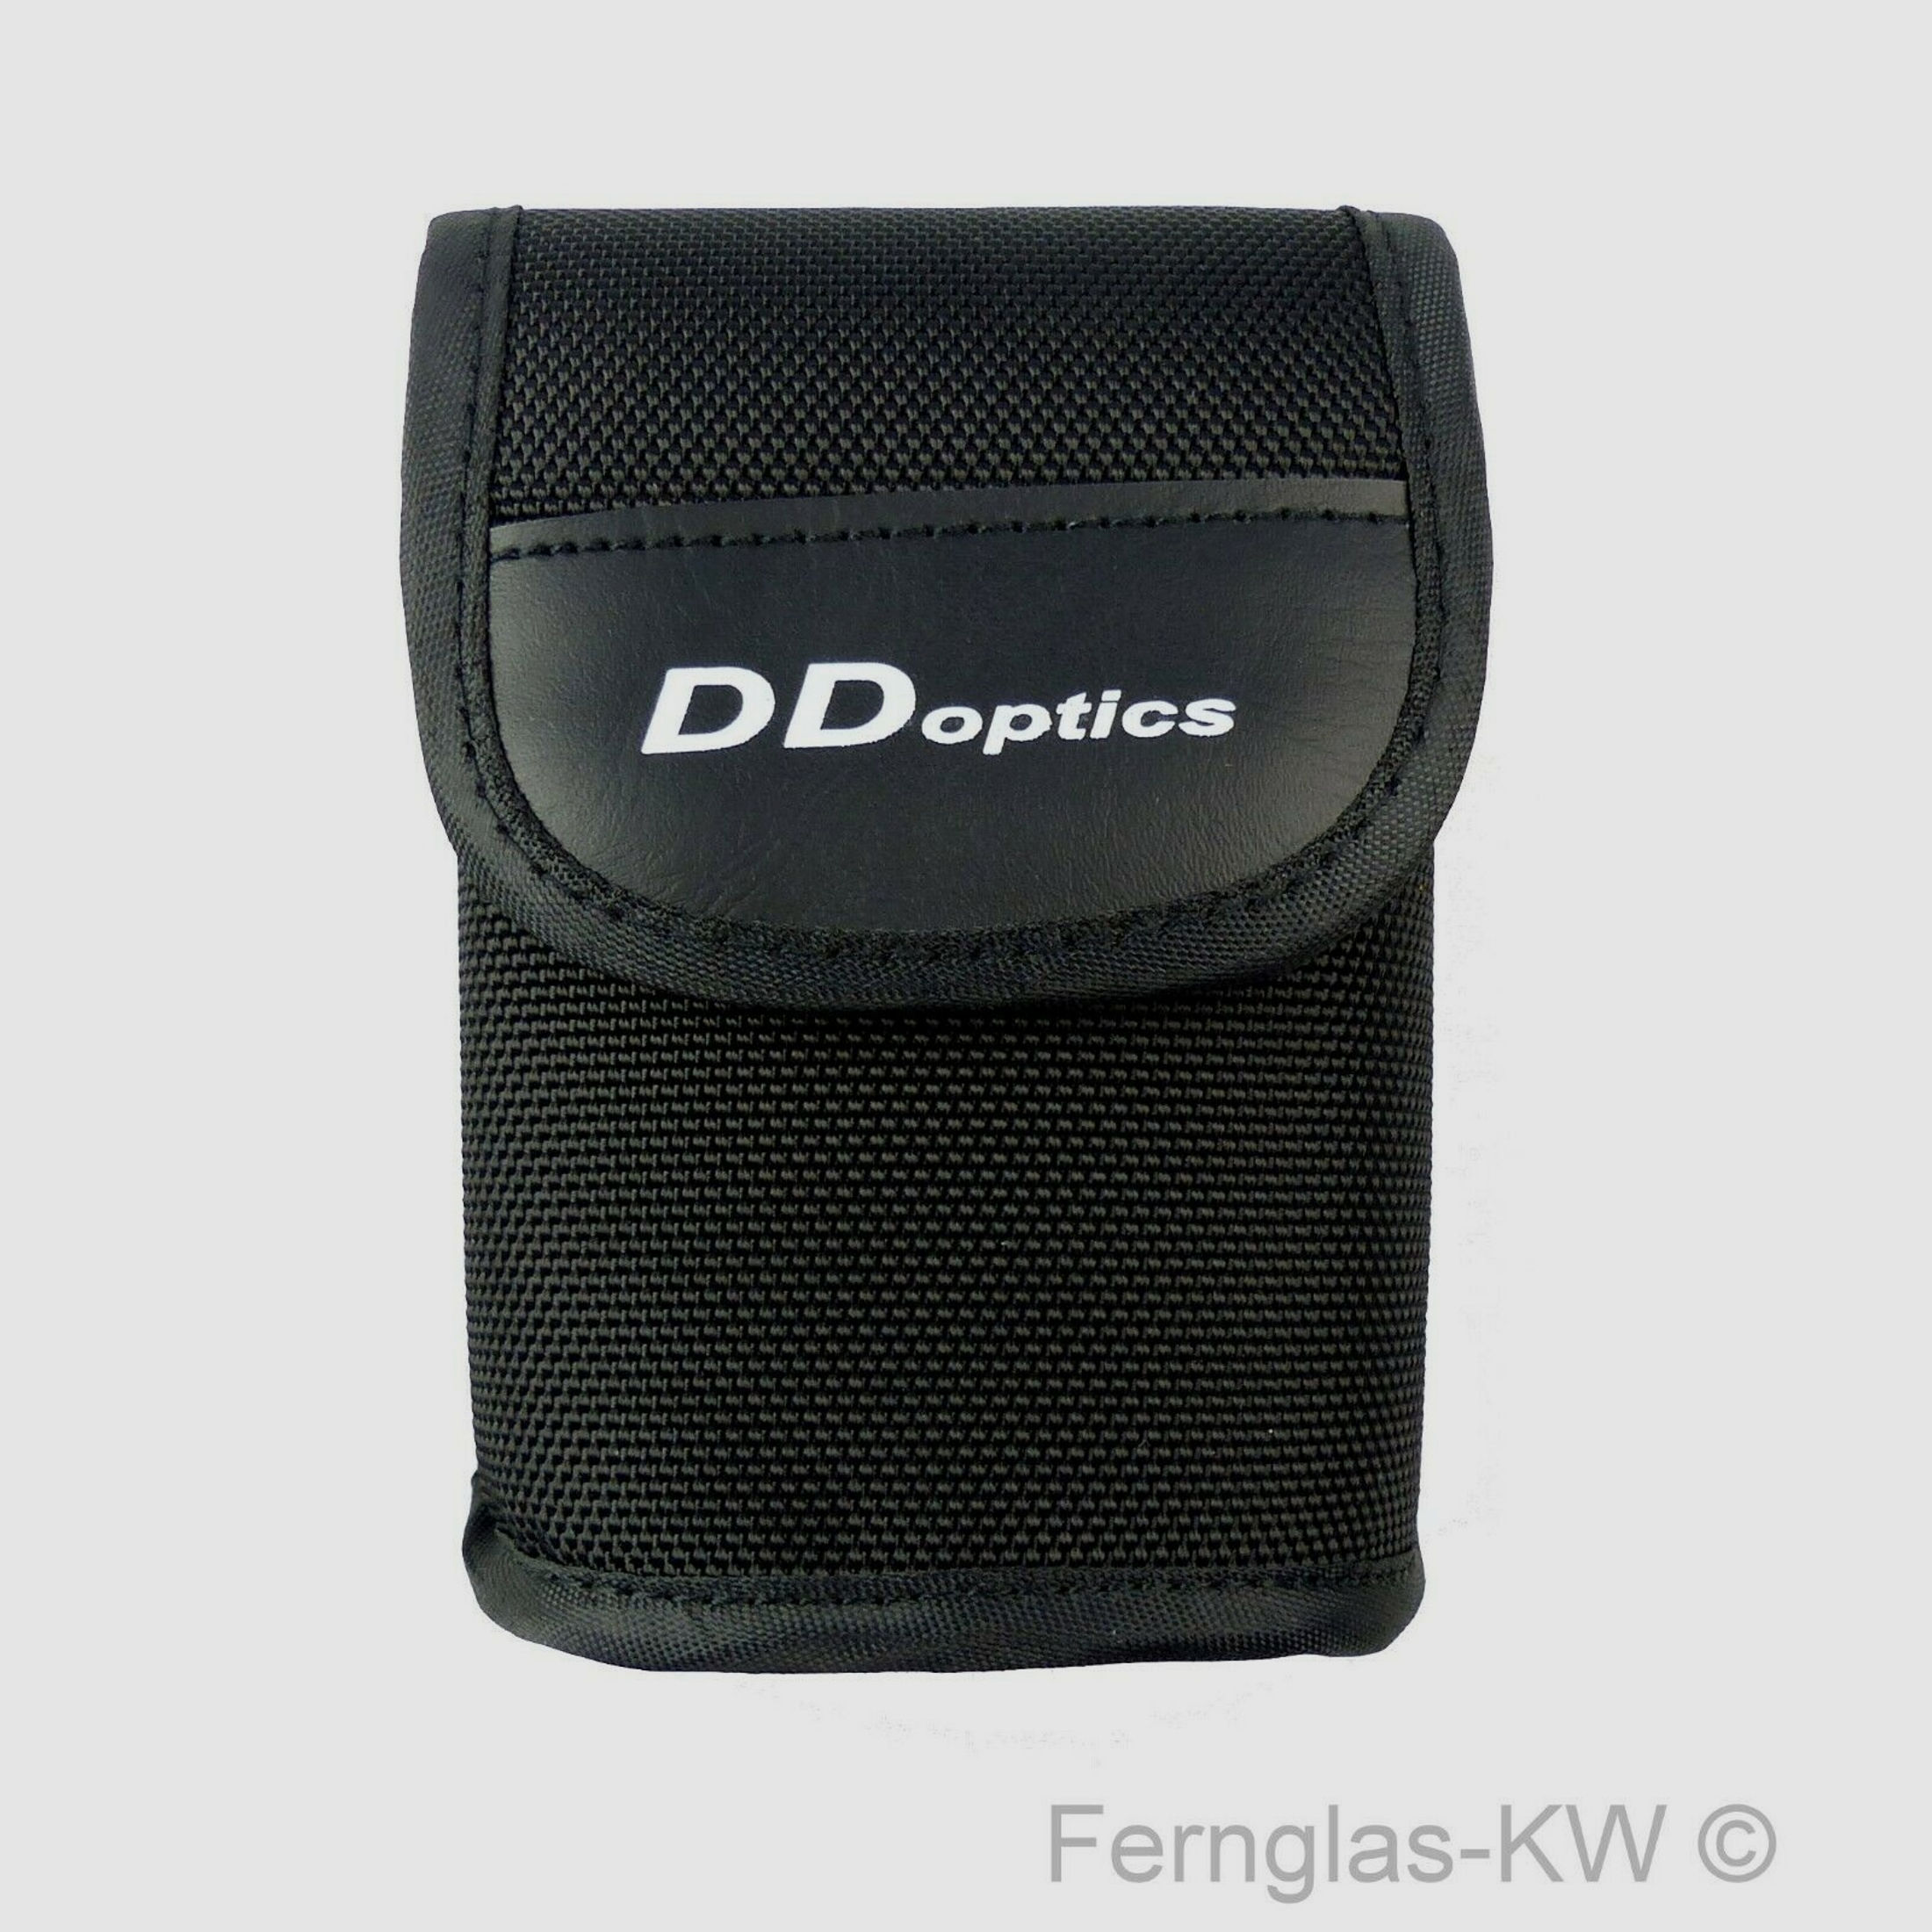 DDoptics Rangefinder Laser Entfernungsmesser RF 1200 Mini Gen 3 mit Tasche